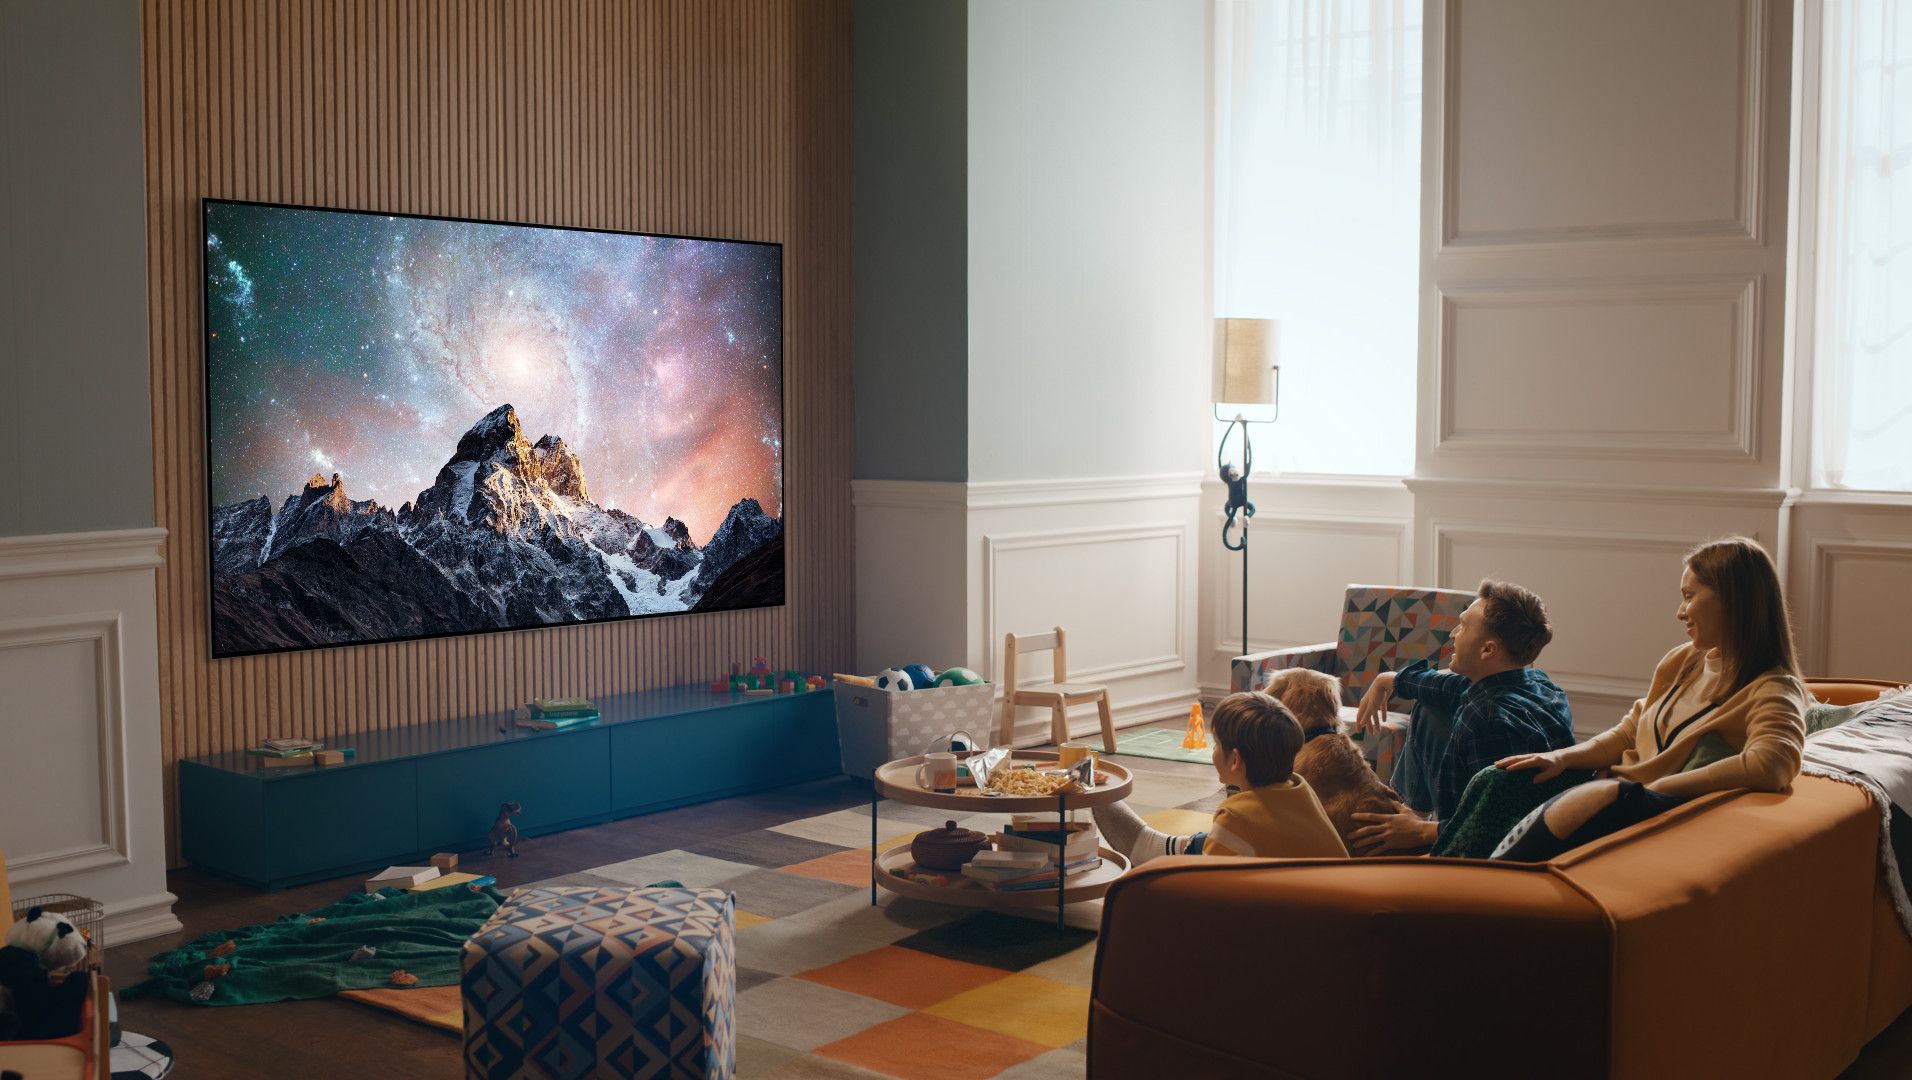 LG stellt 42-97-Zoll-OLED-Fernseher vor